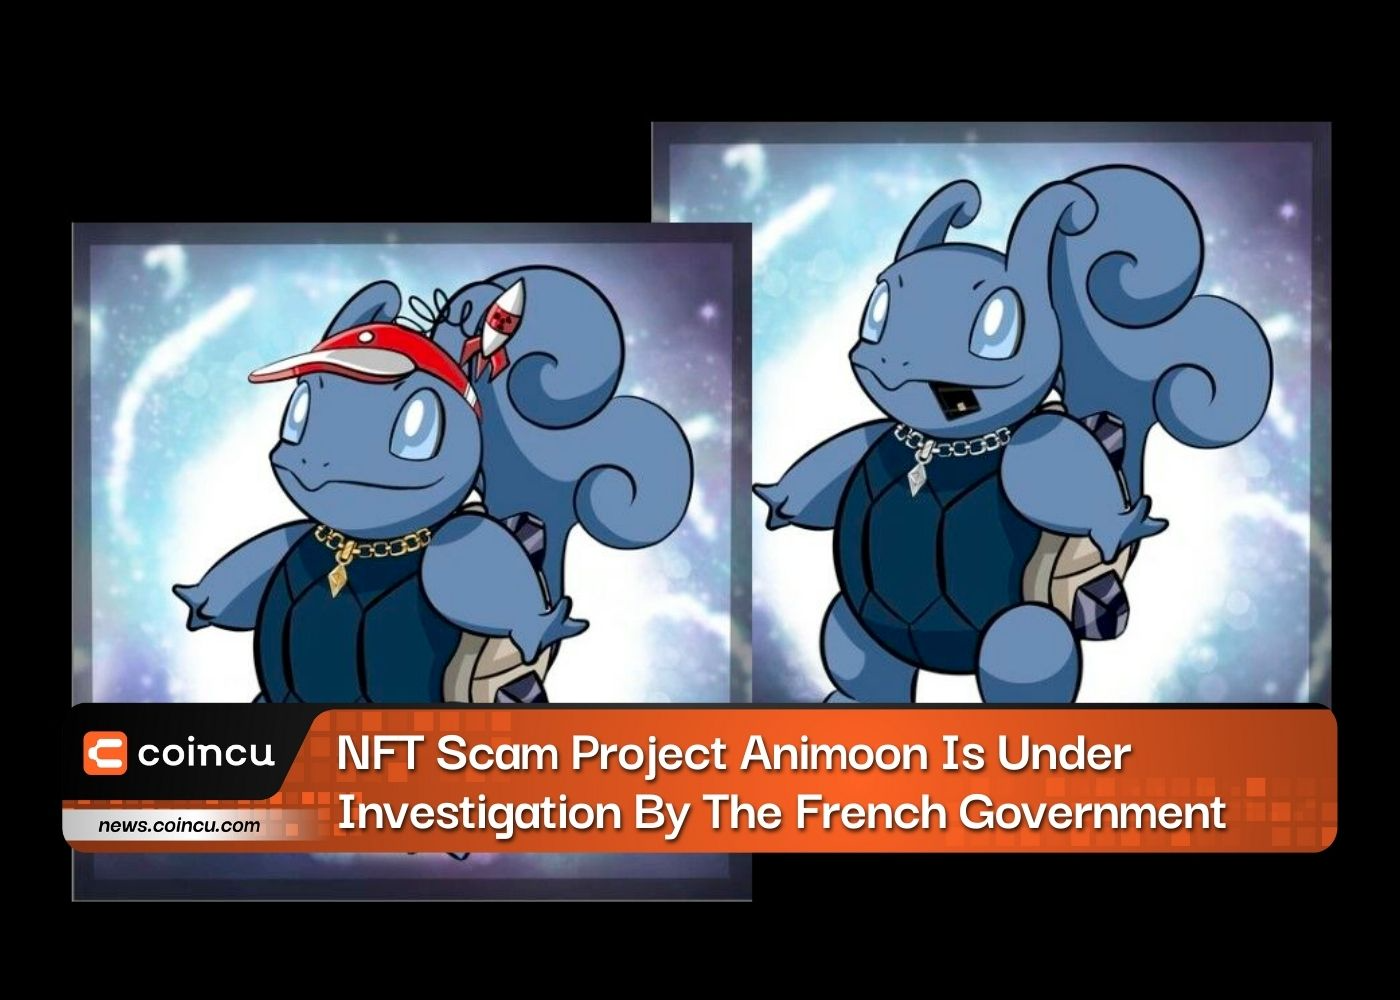 Das NFT-Betrugsprojekt Animoon wird von der französischen Regierung untersucht